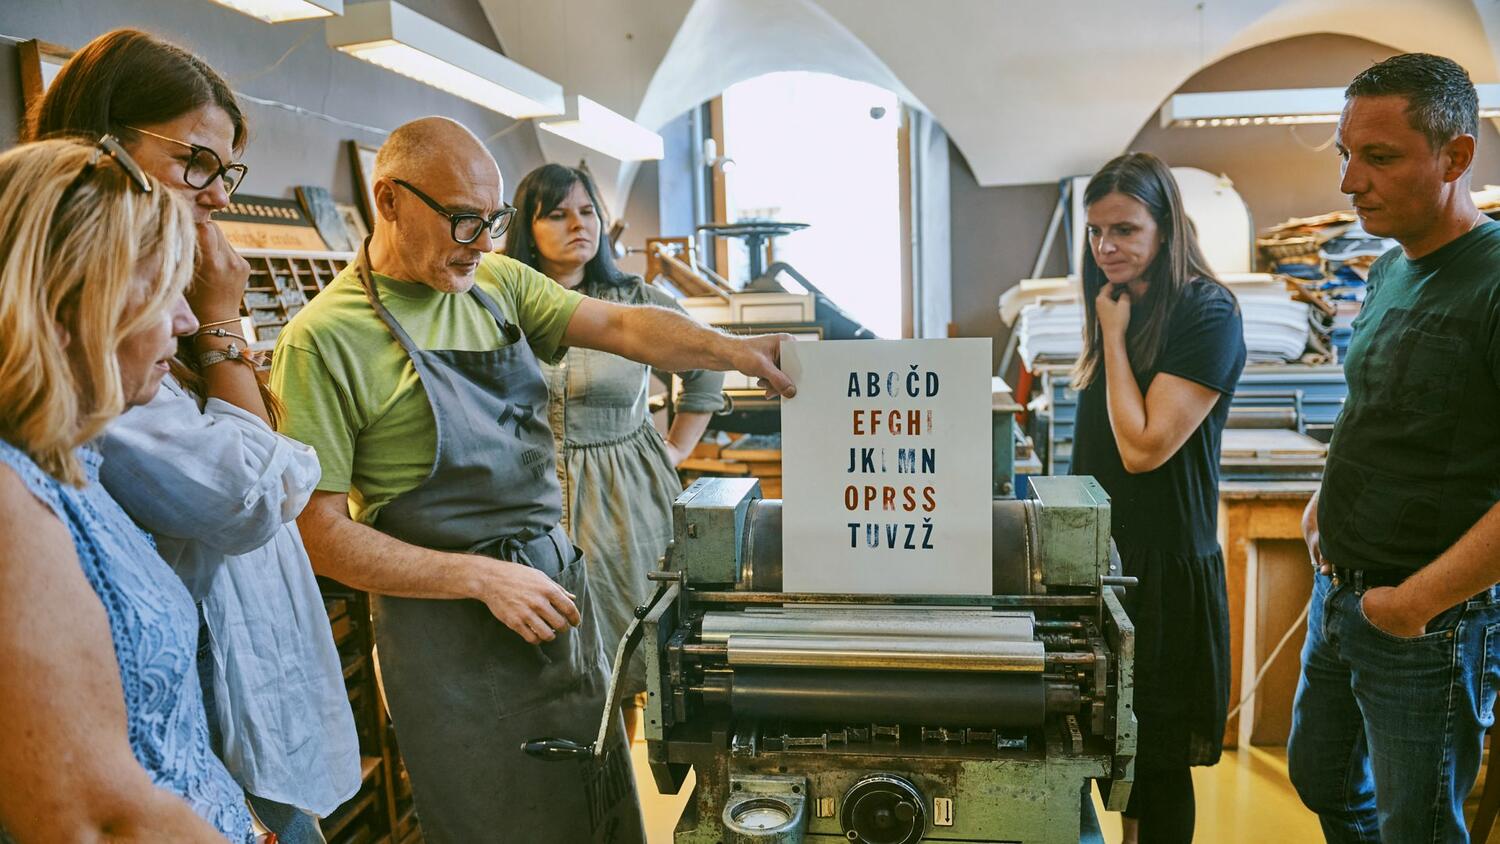 Rokodelska delavnica Natisni svoj plakat v stari tiskarni v Ljubljani – rokodelec kaže skupini pkalat z ročno natisnjeno slovensko abecedo